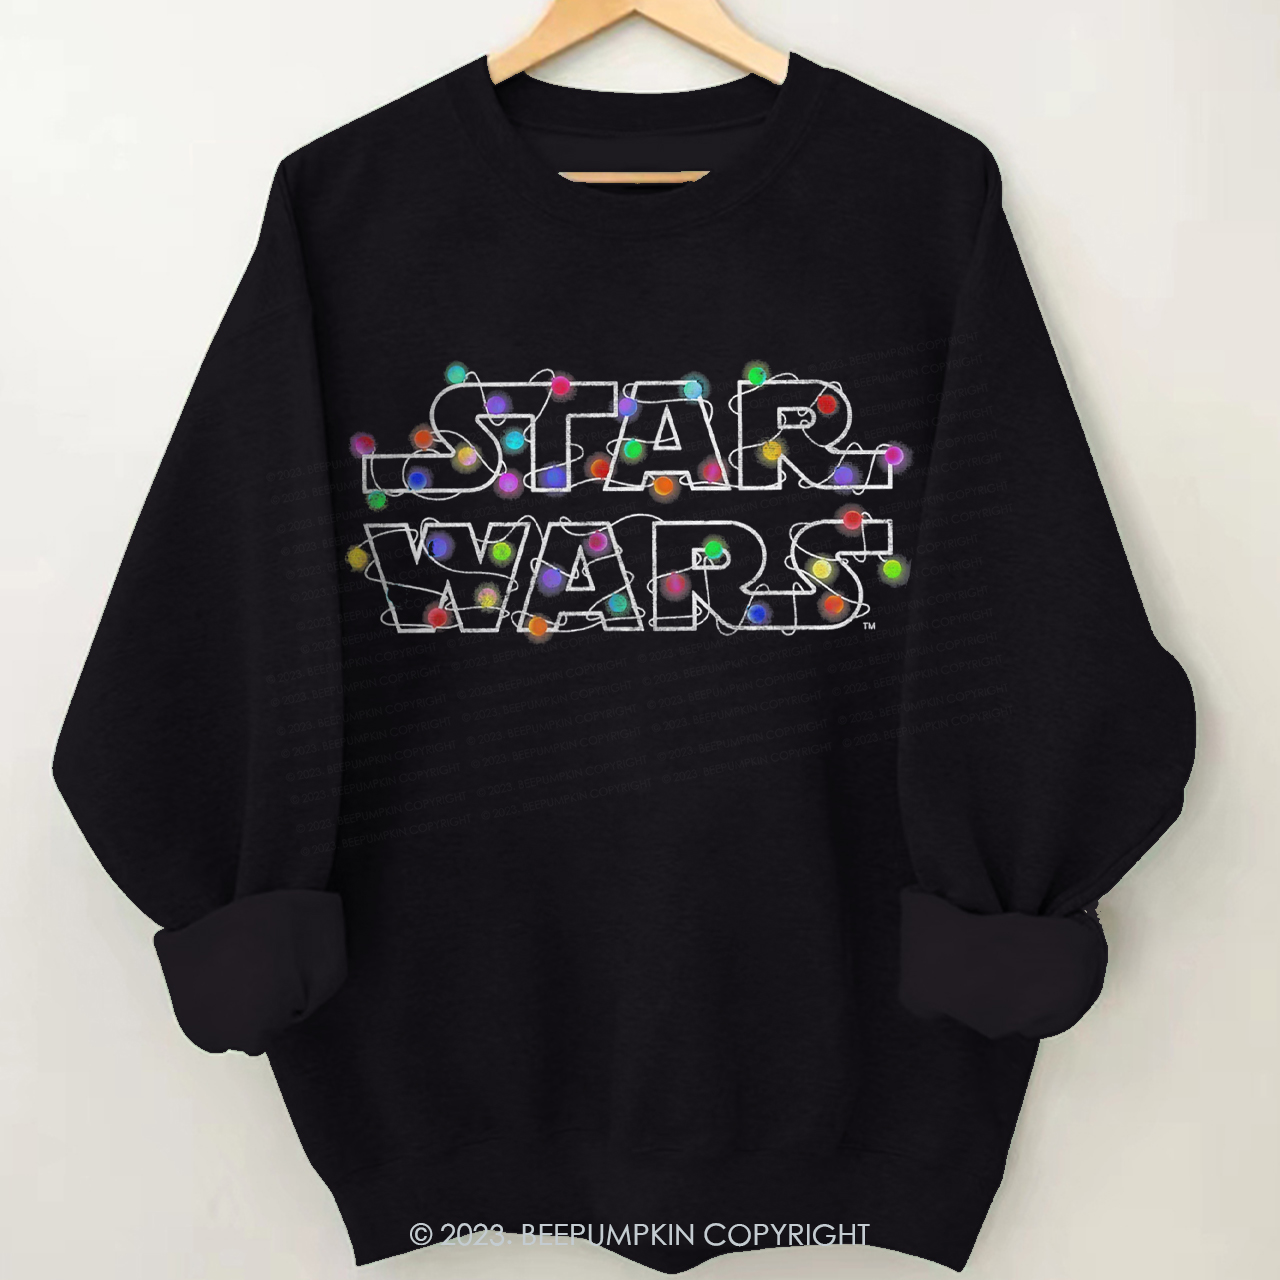 Star Wars Vintage Autumn Sweatshirt